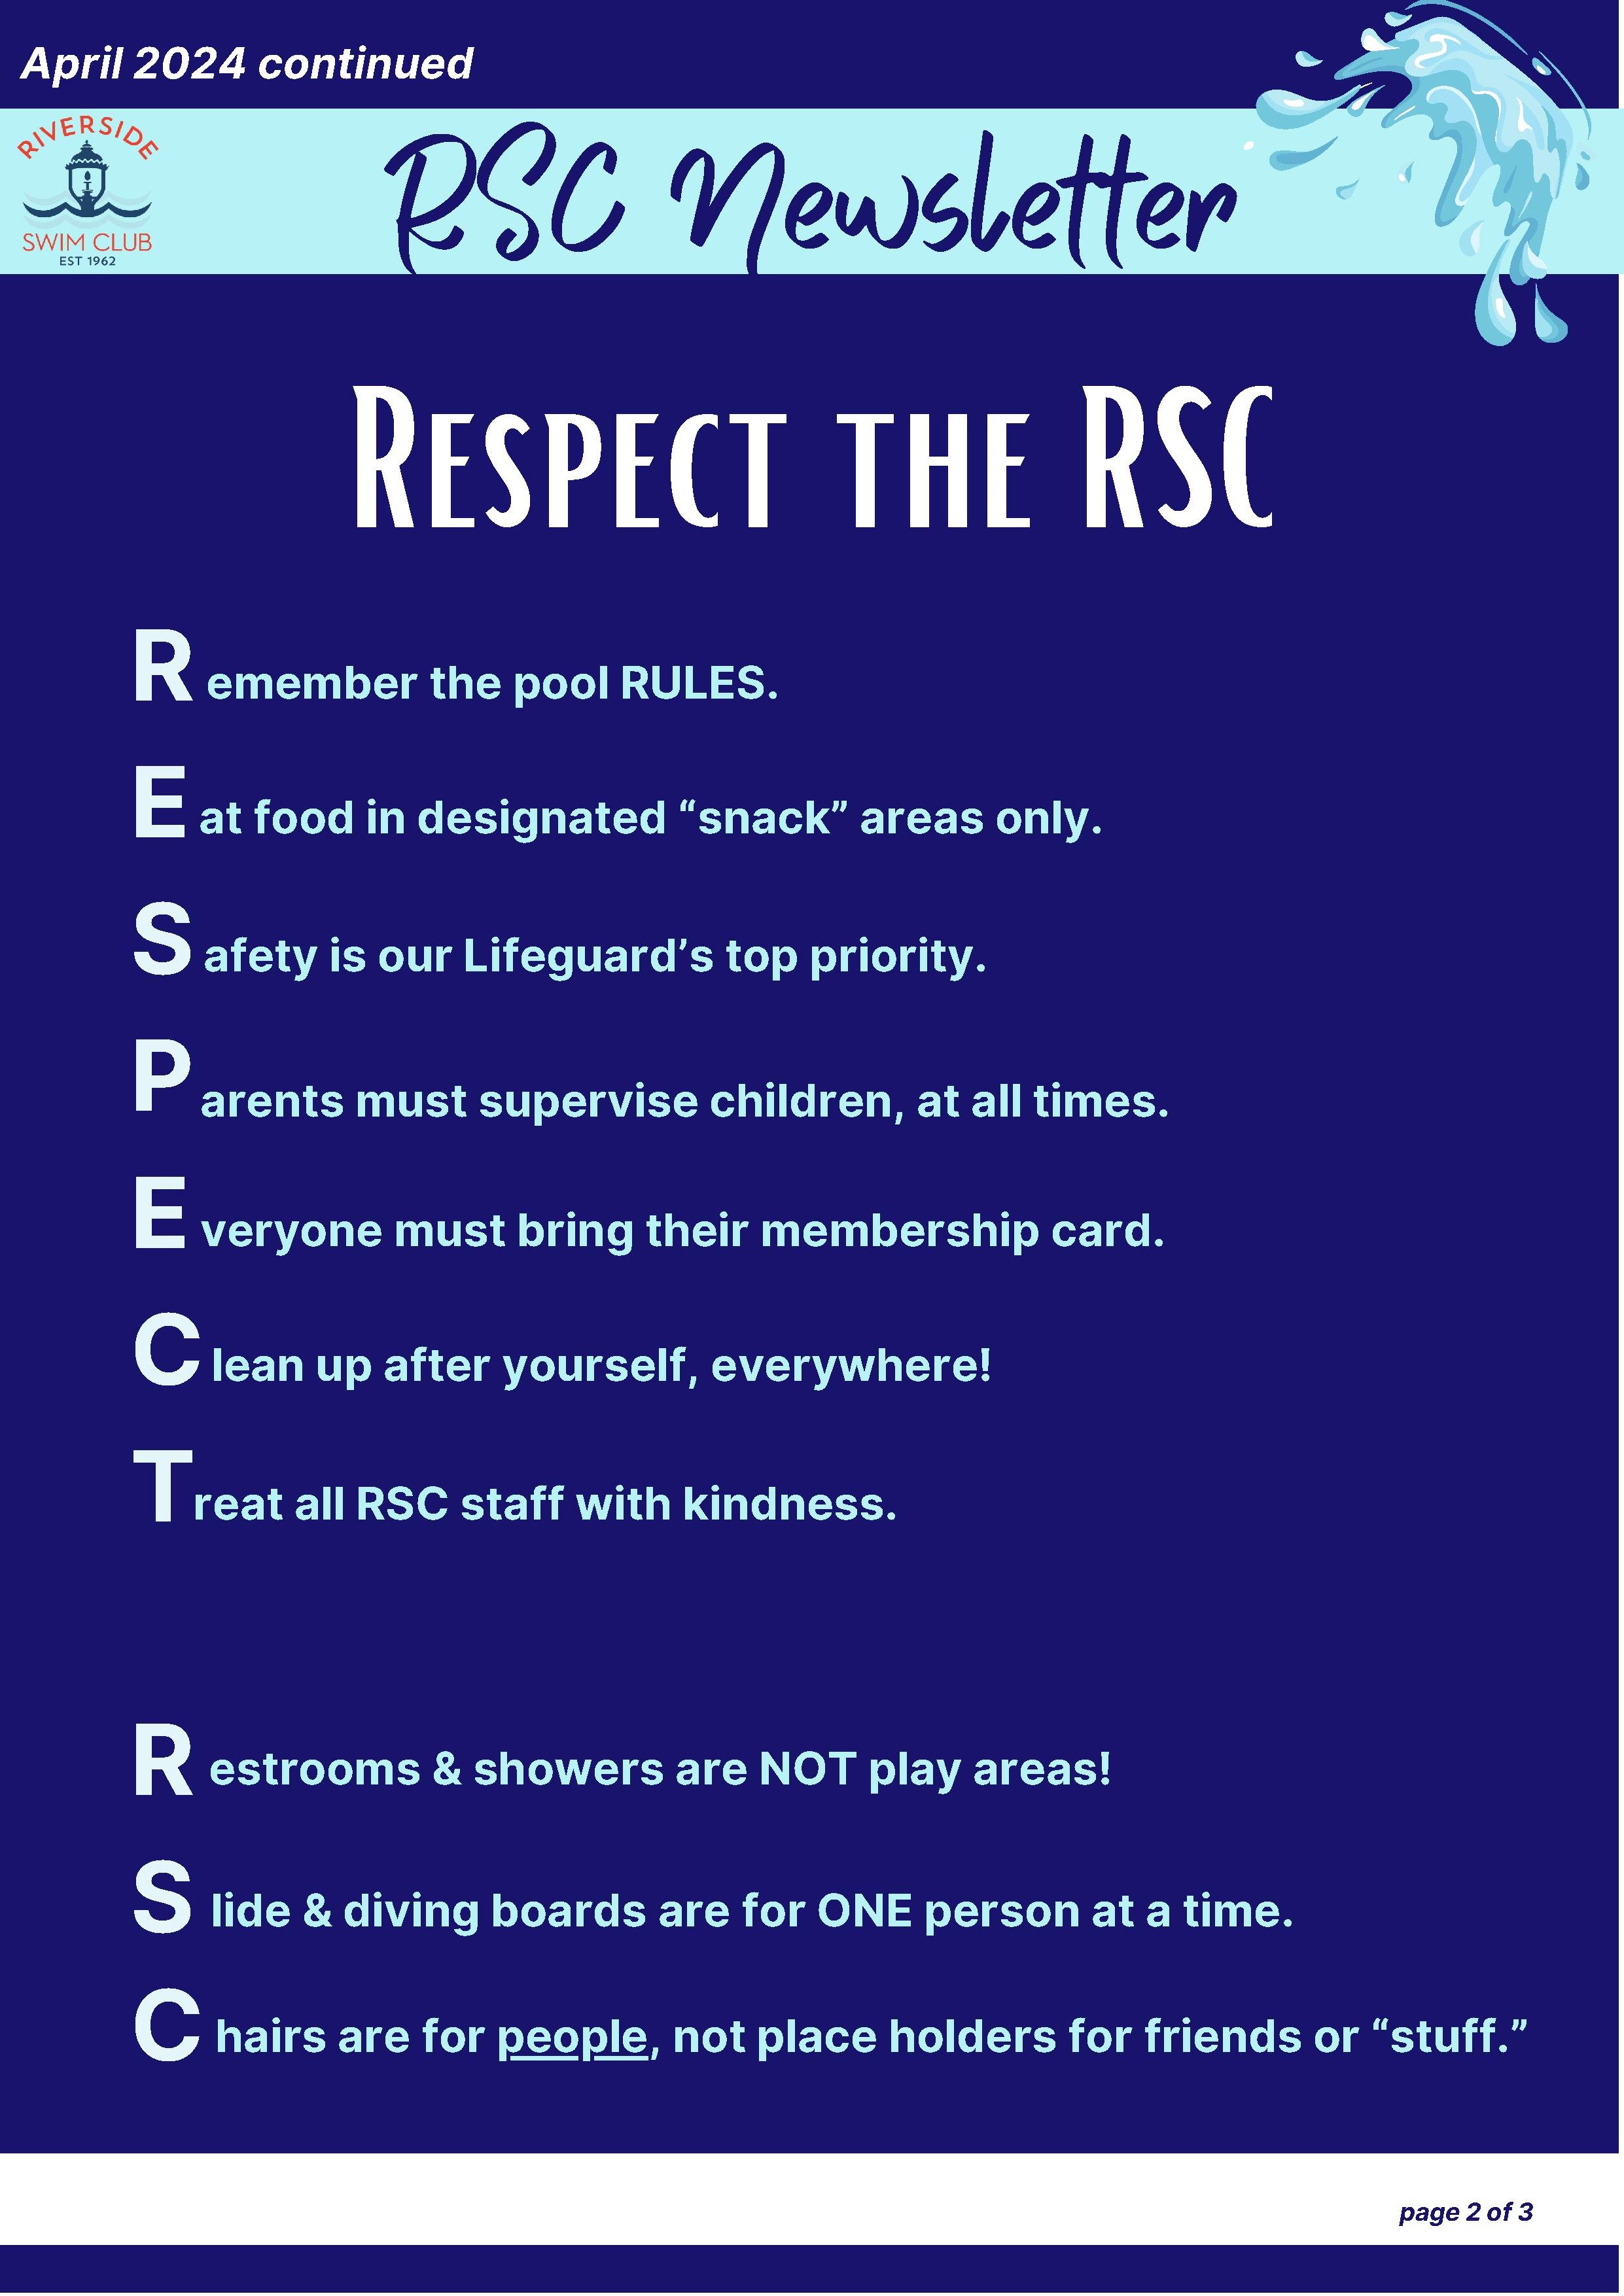 RSC Newsletter_April 2024 (1)_2.jpg